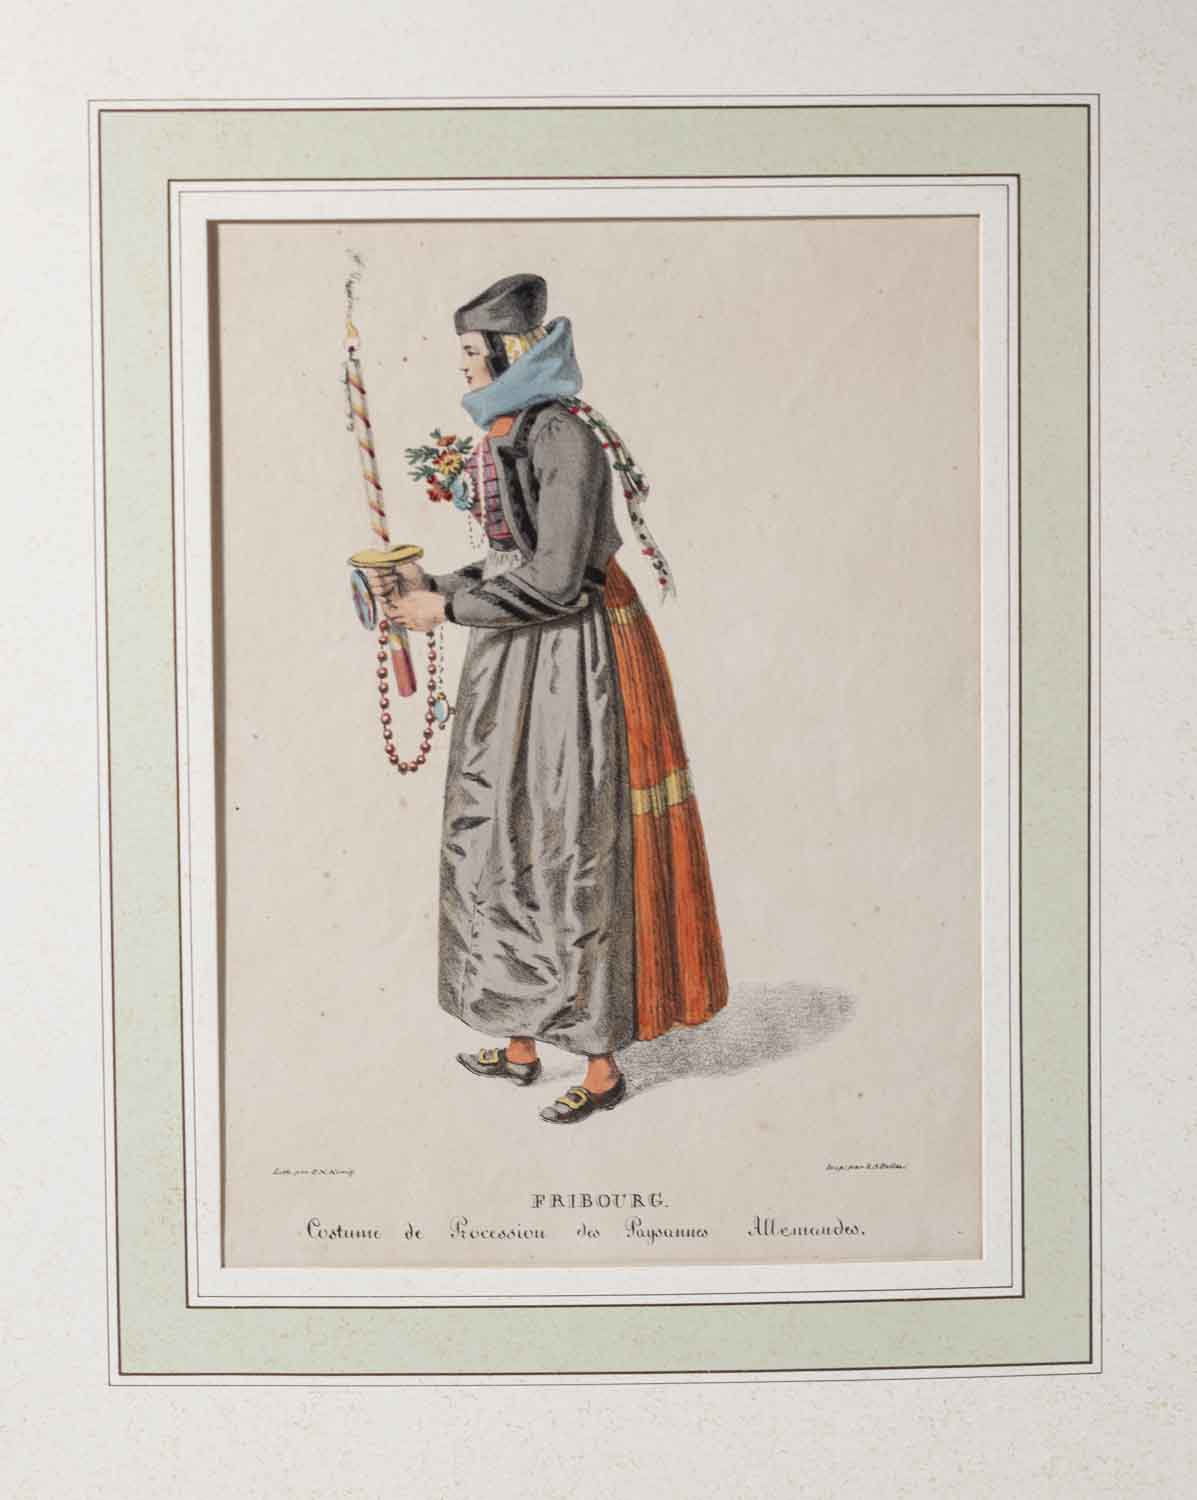 KOENIG, Niklaus (1765-1832) (Lith.): - Fribourg. Costume de Procession des Paysannes Allemandes.